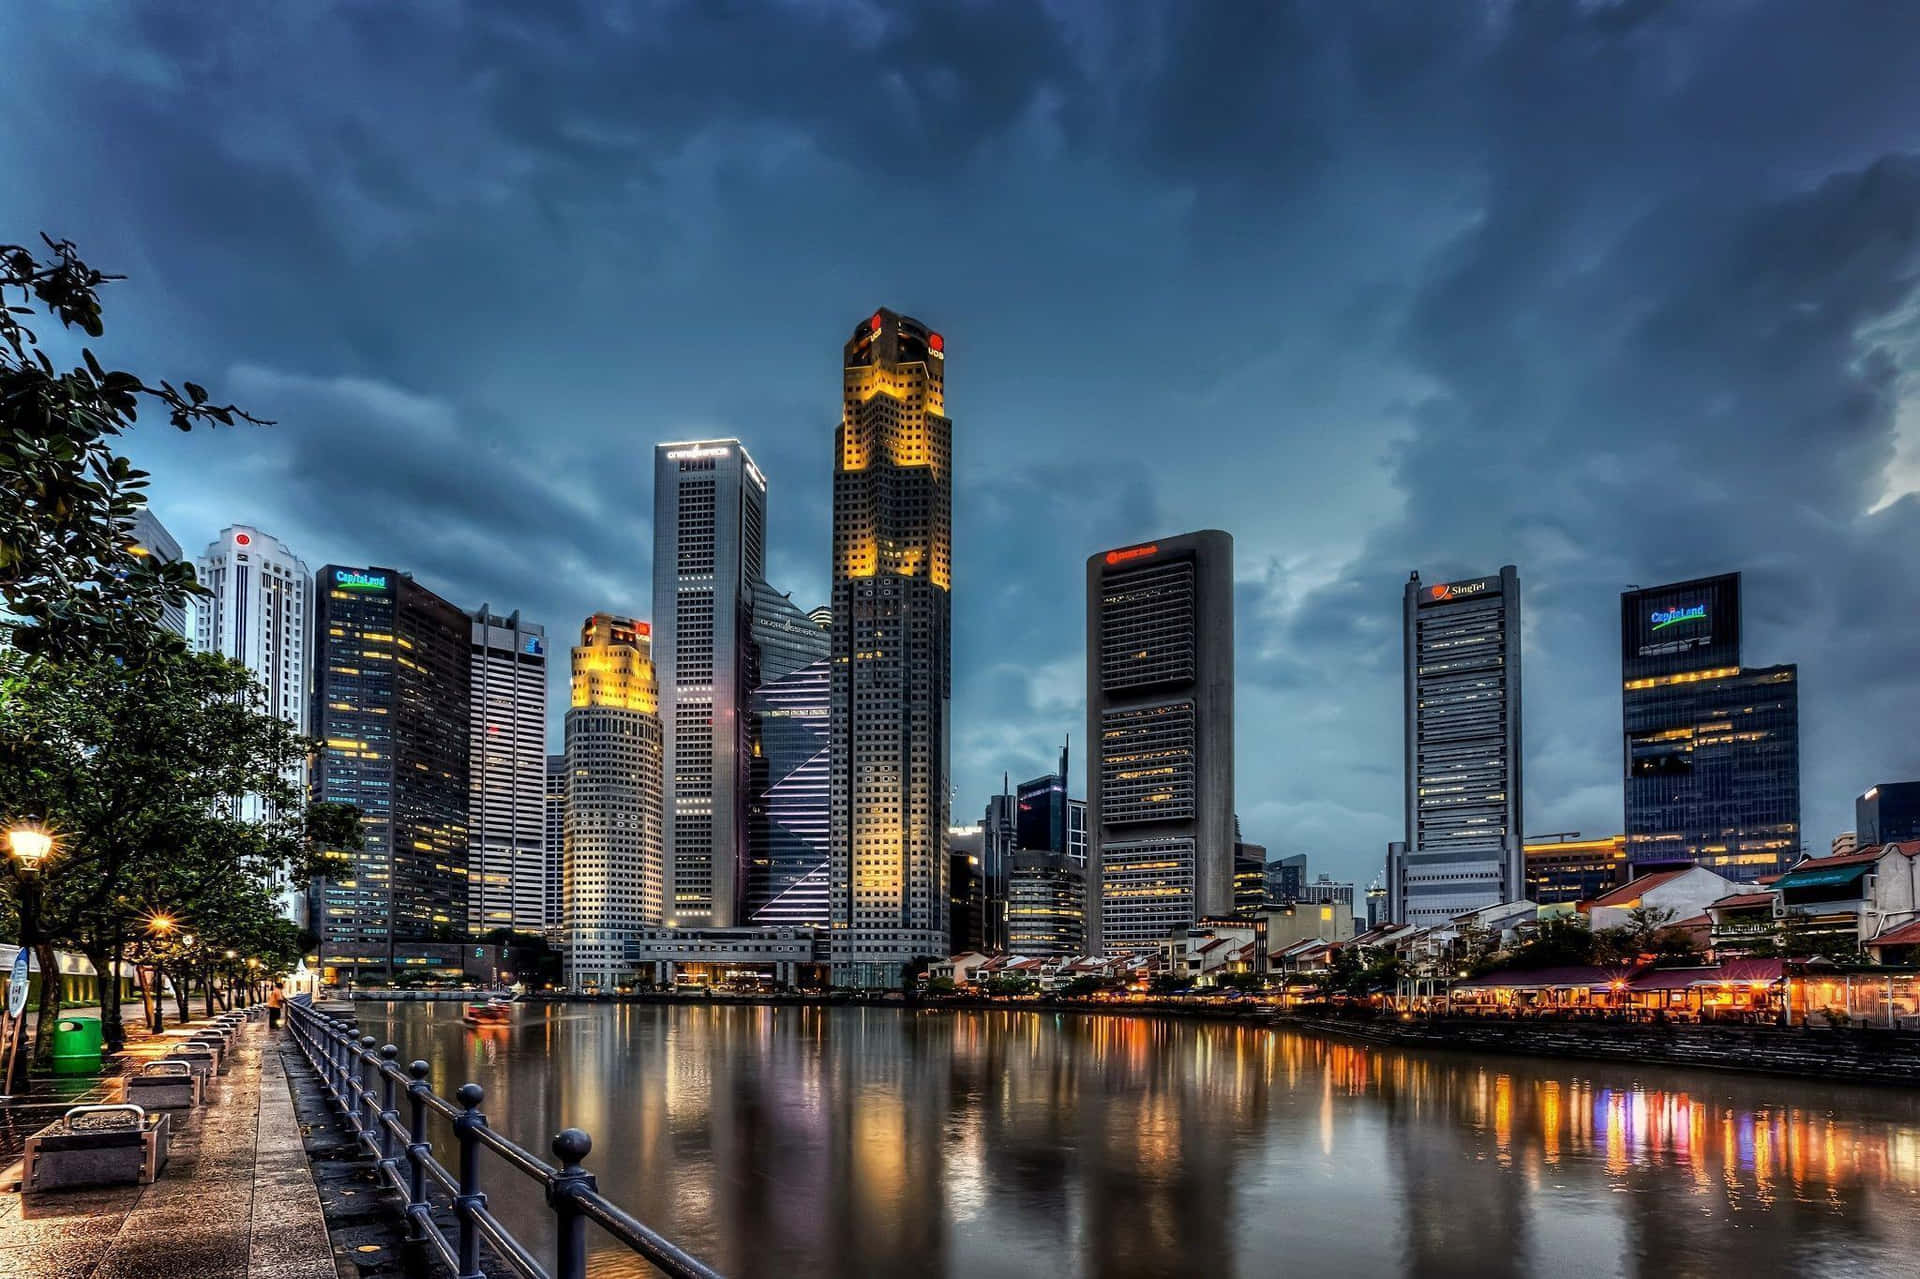 Floating Lanterns Illuminate the Night Sky of Singapore